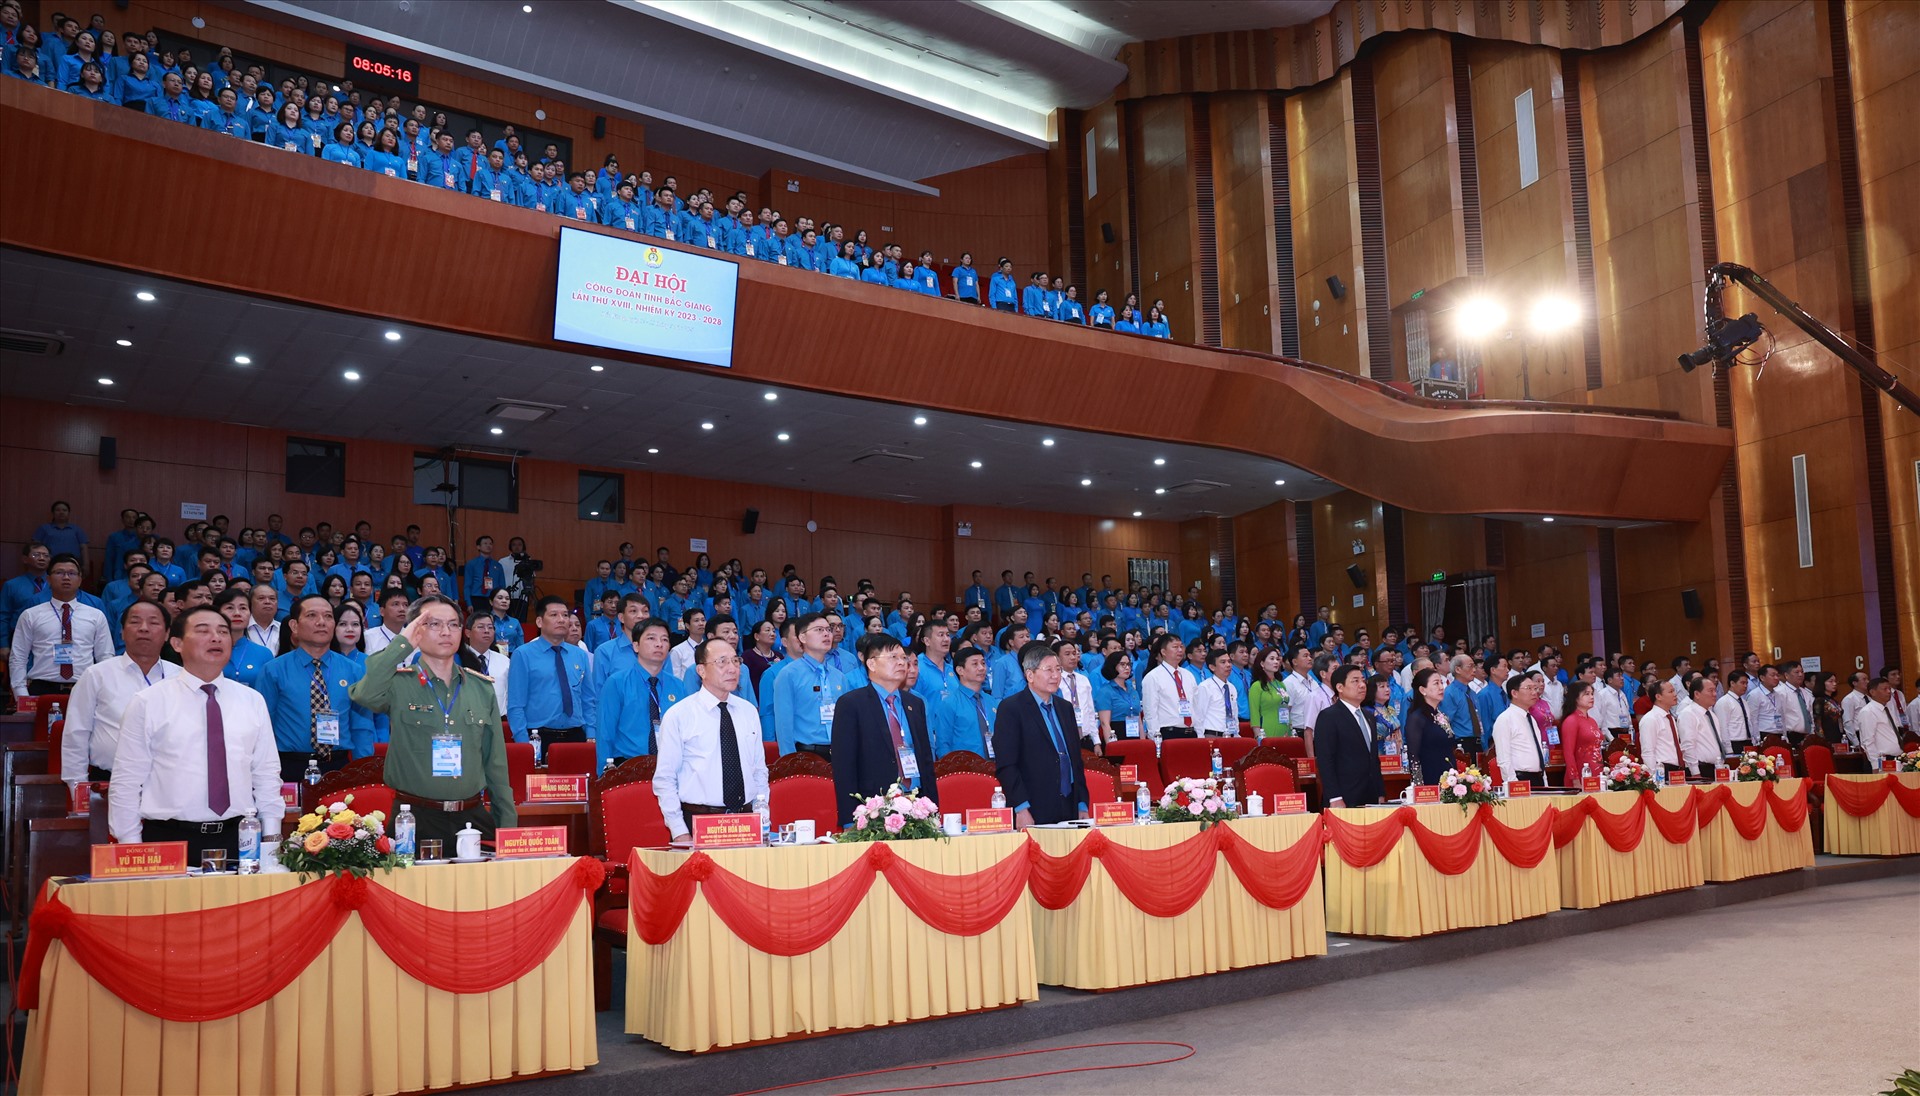 Tham dự đại hội có 365 đại biểu chính thức, đại diện cho gần 28 vạn đoàn viên công đoàn trong toàn tỉnh. Ảnh: Hải Nguyễn 